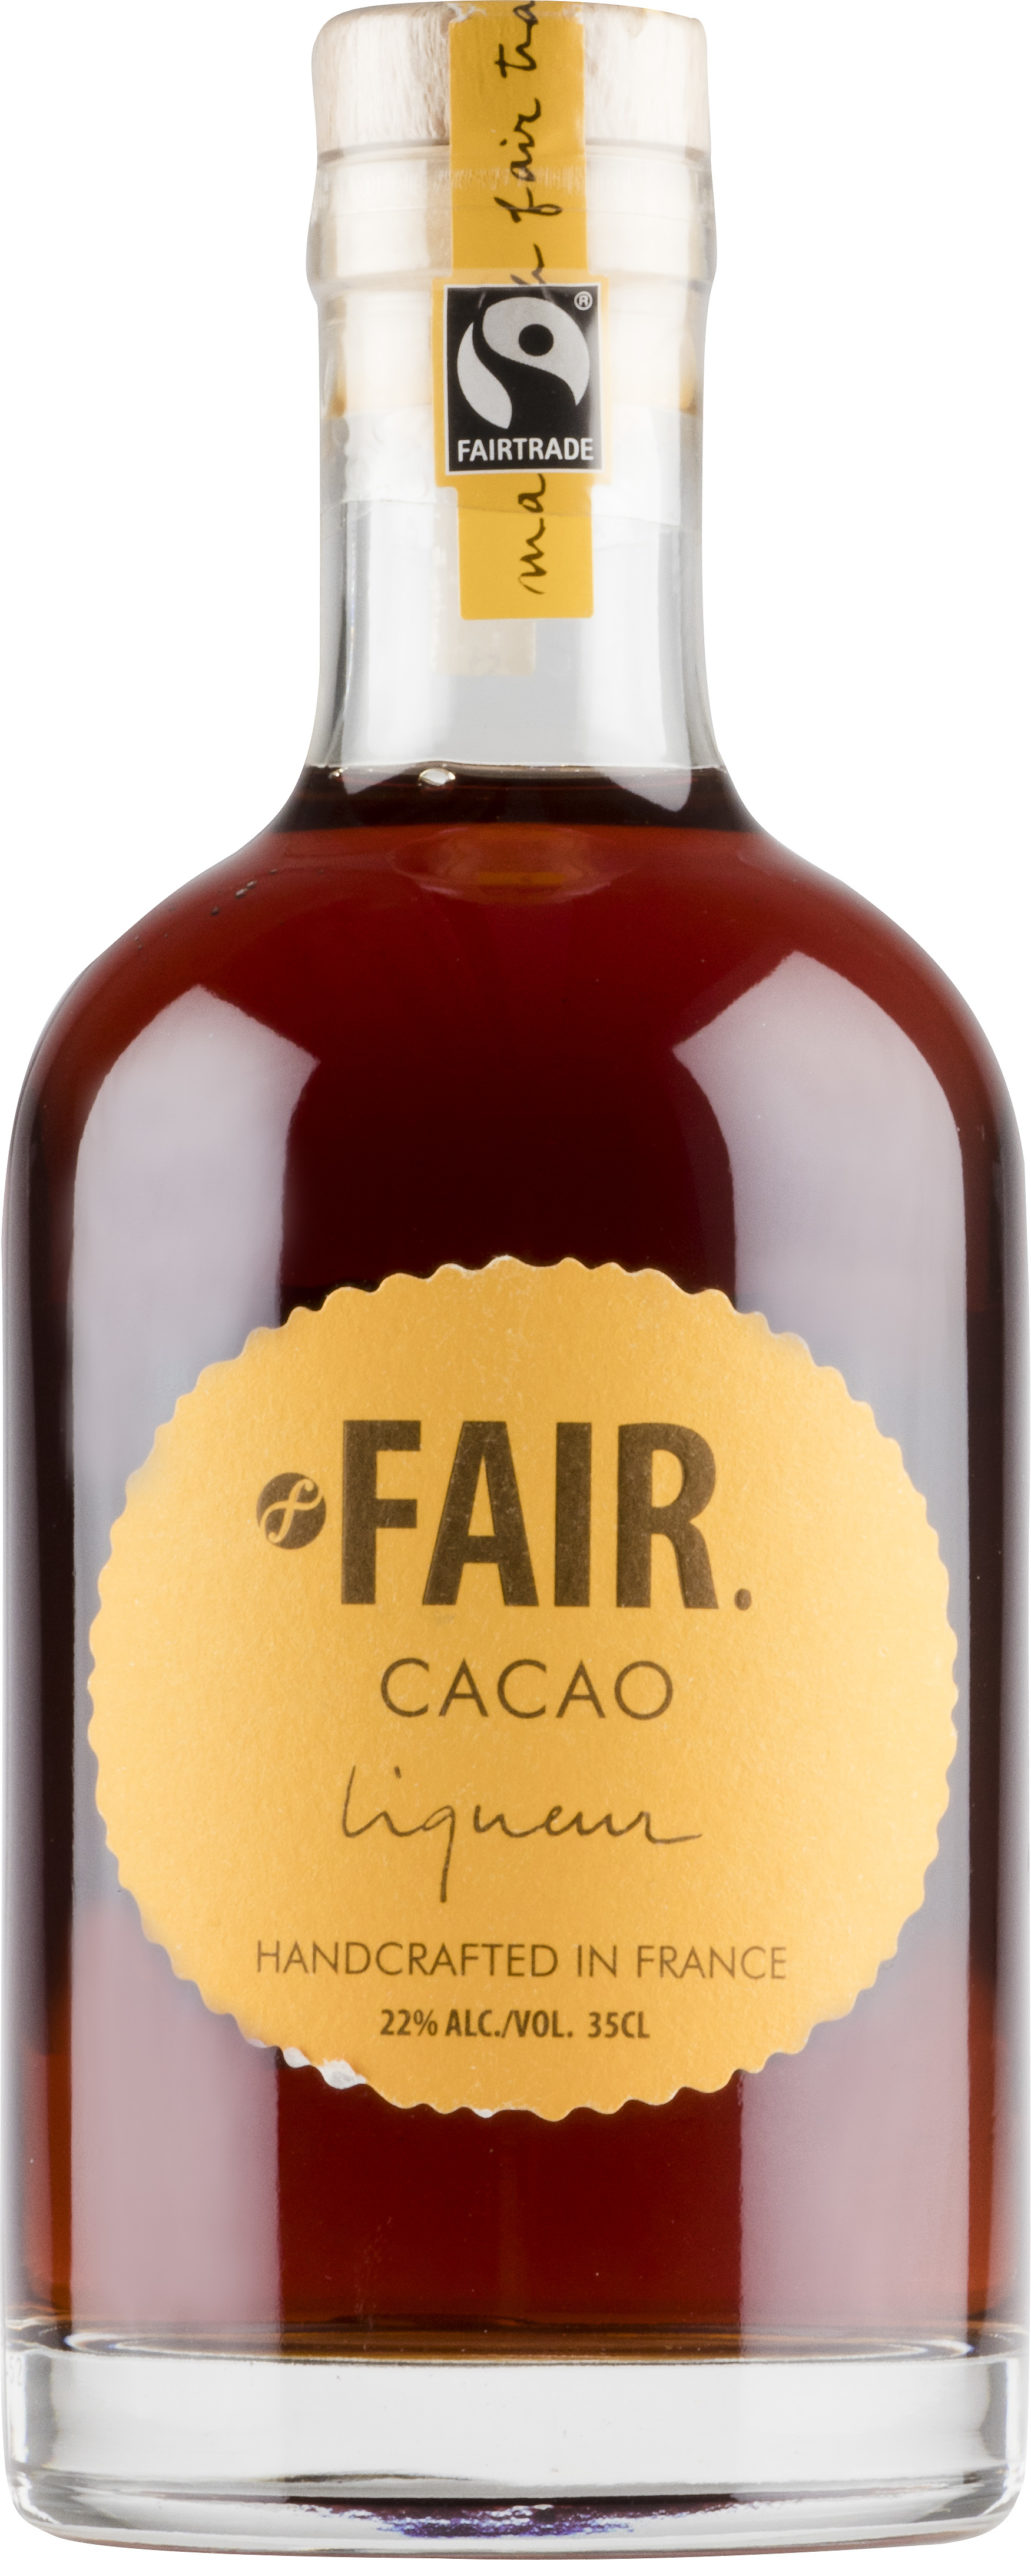 Fair. Cacao Liqueur